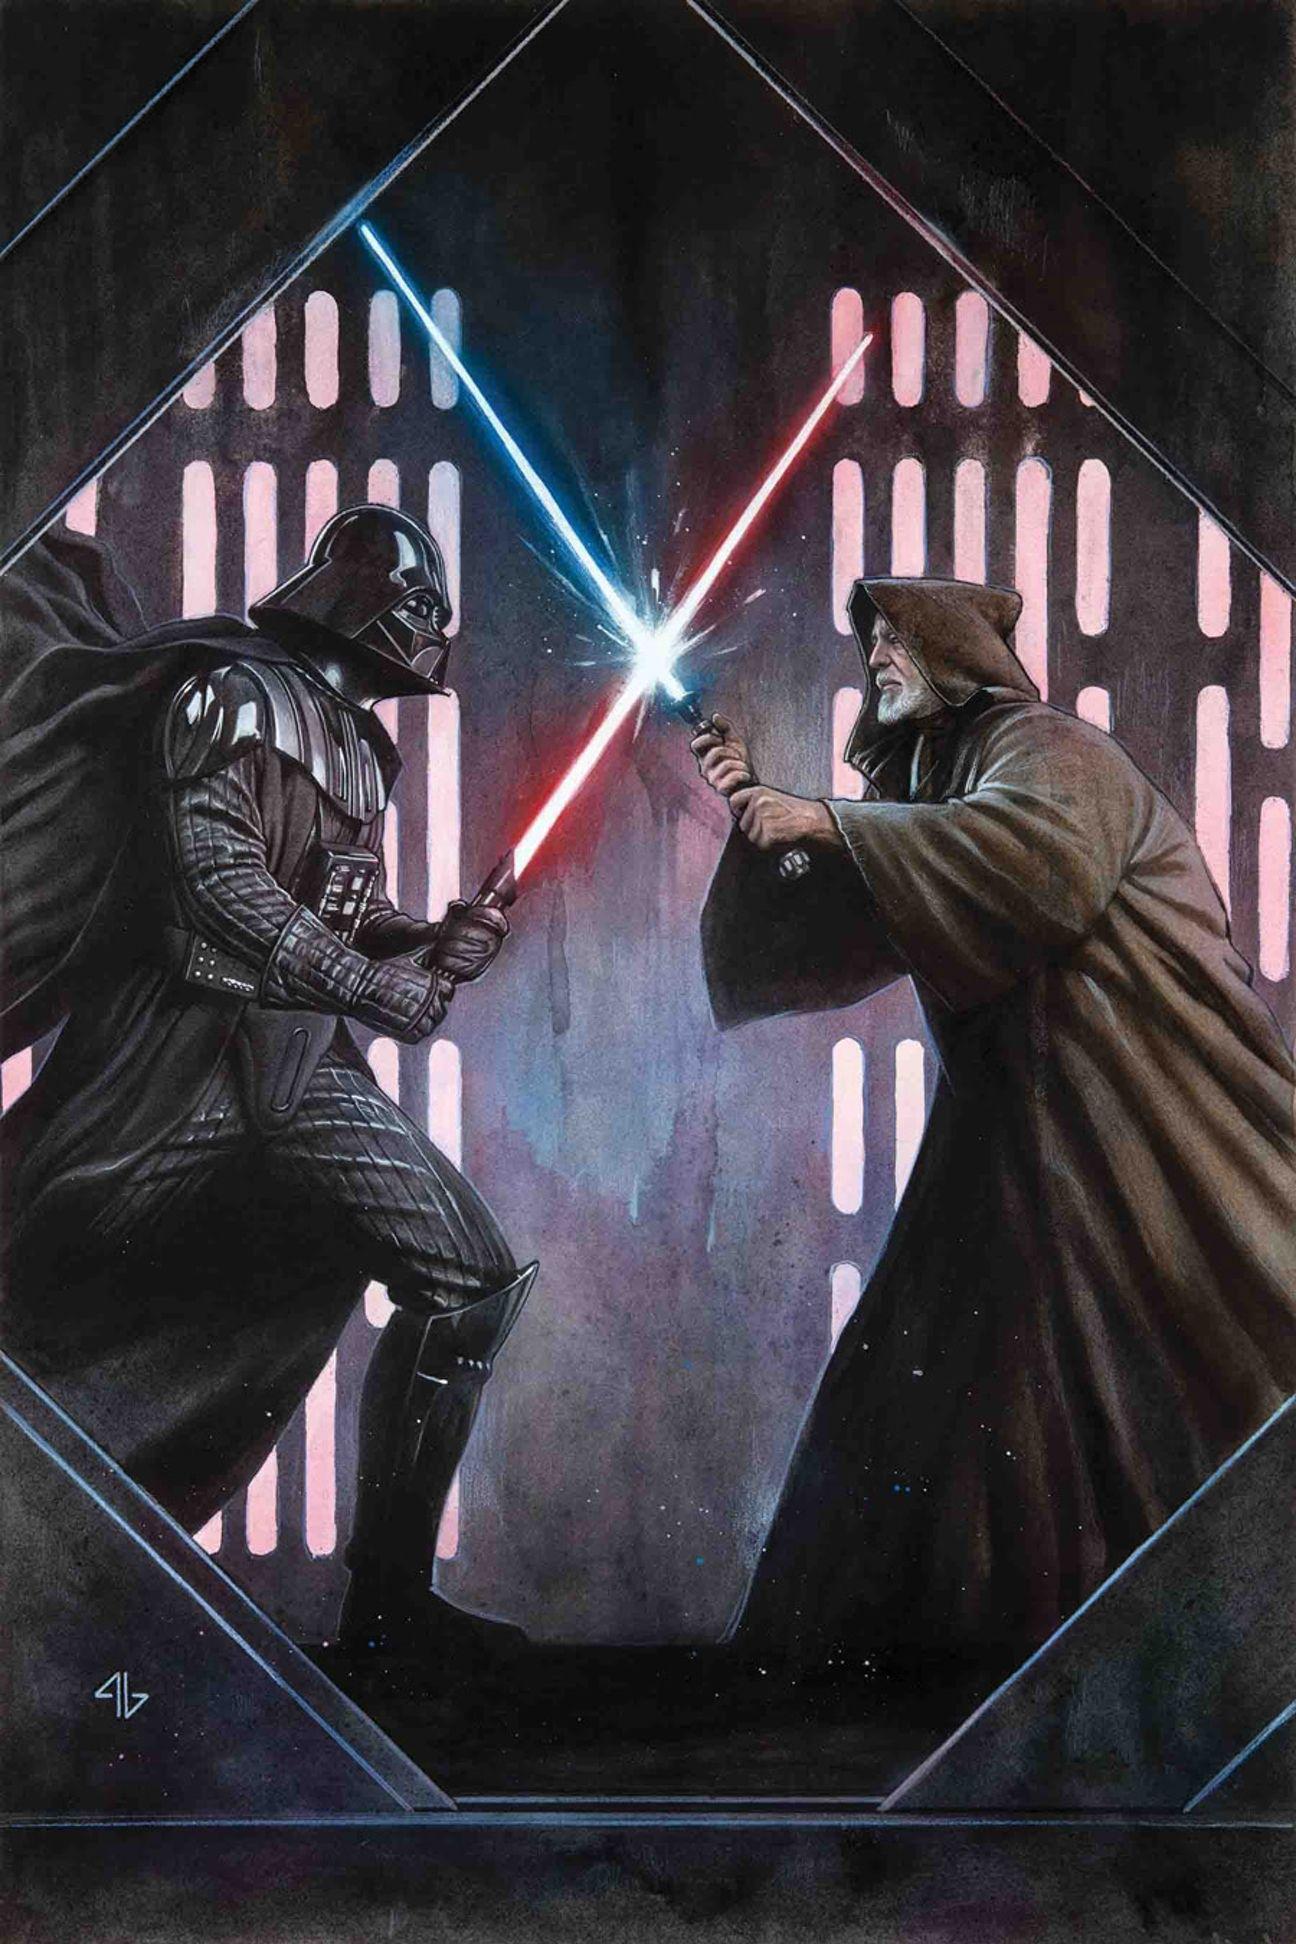 ObiWan Kenobi Series Darth Vader Lightsaber Wallpaper 4K 6621g